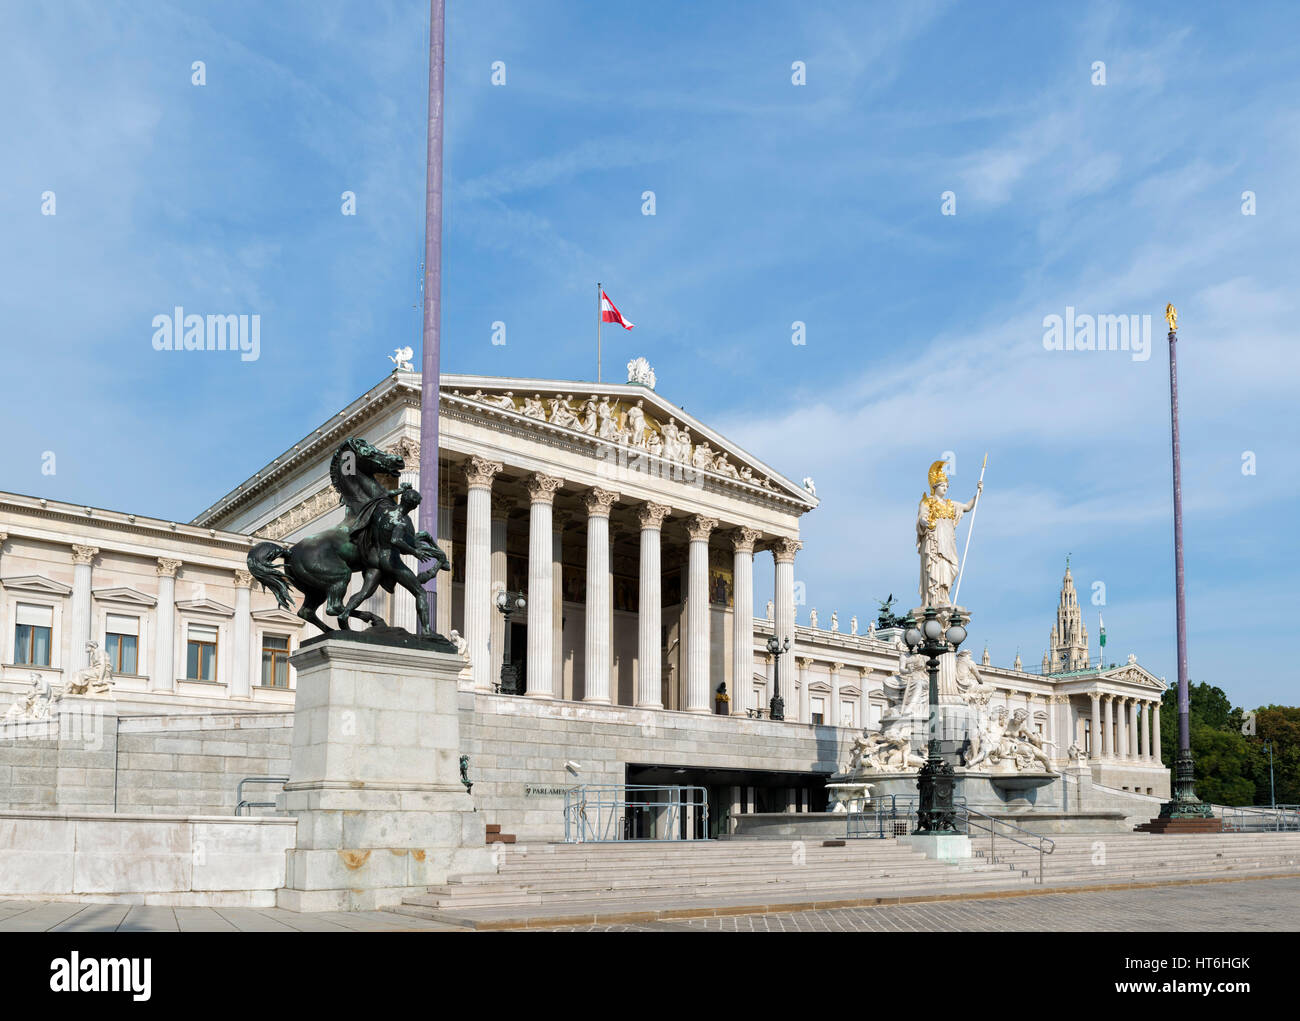 Bâtiment du Parlement autrichien, Vienne. Le Parlement autrichien, Ringstrasse, Vienne, Autriche Banque D'Images